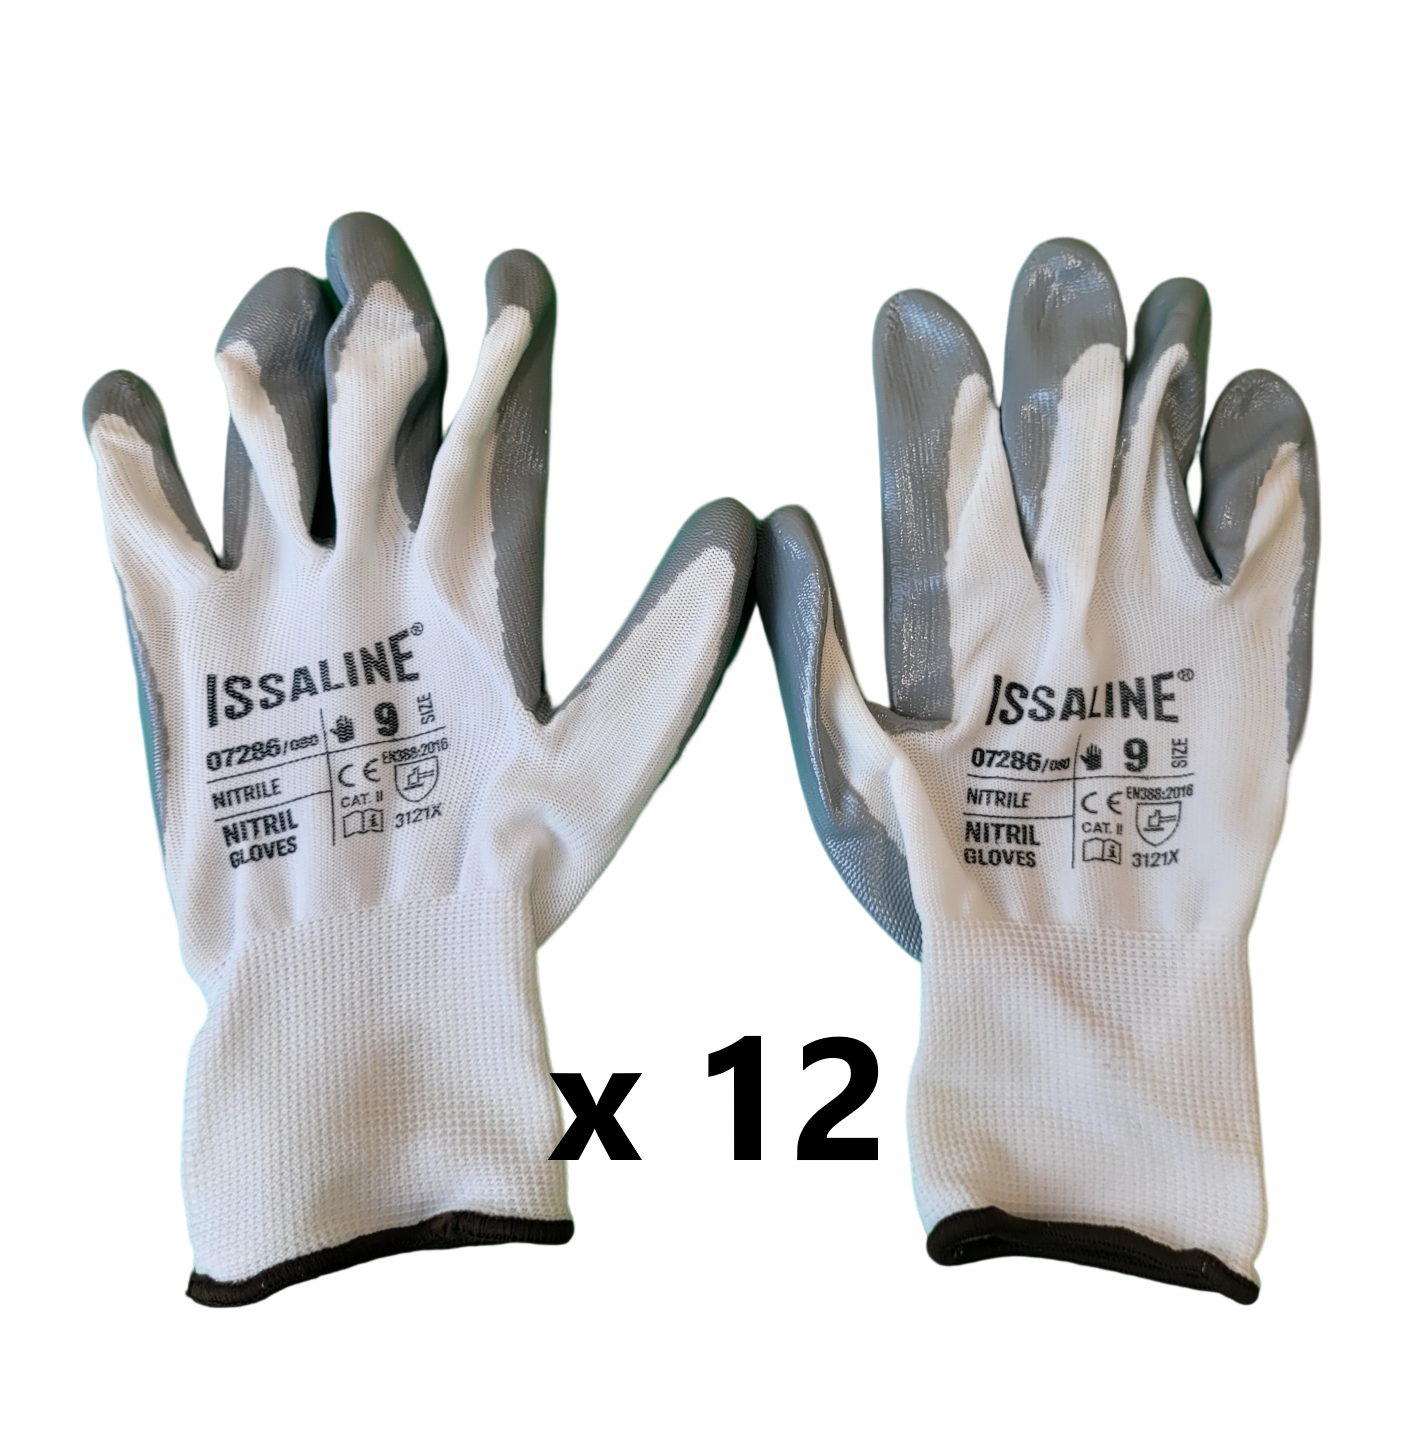 12-gants-de-protection-pose-carrelage-07286-gris-taille-9-(3)